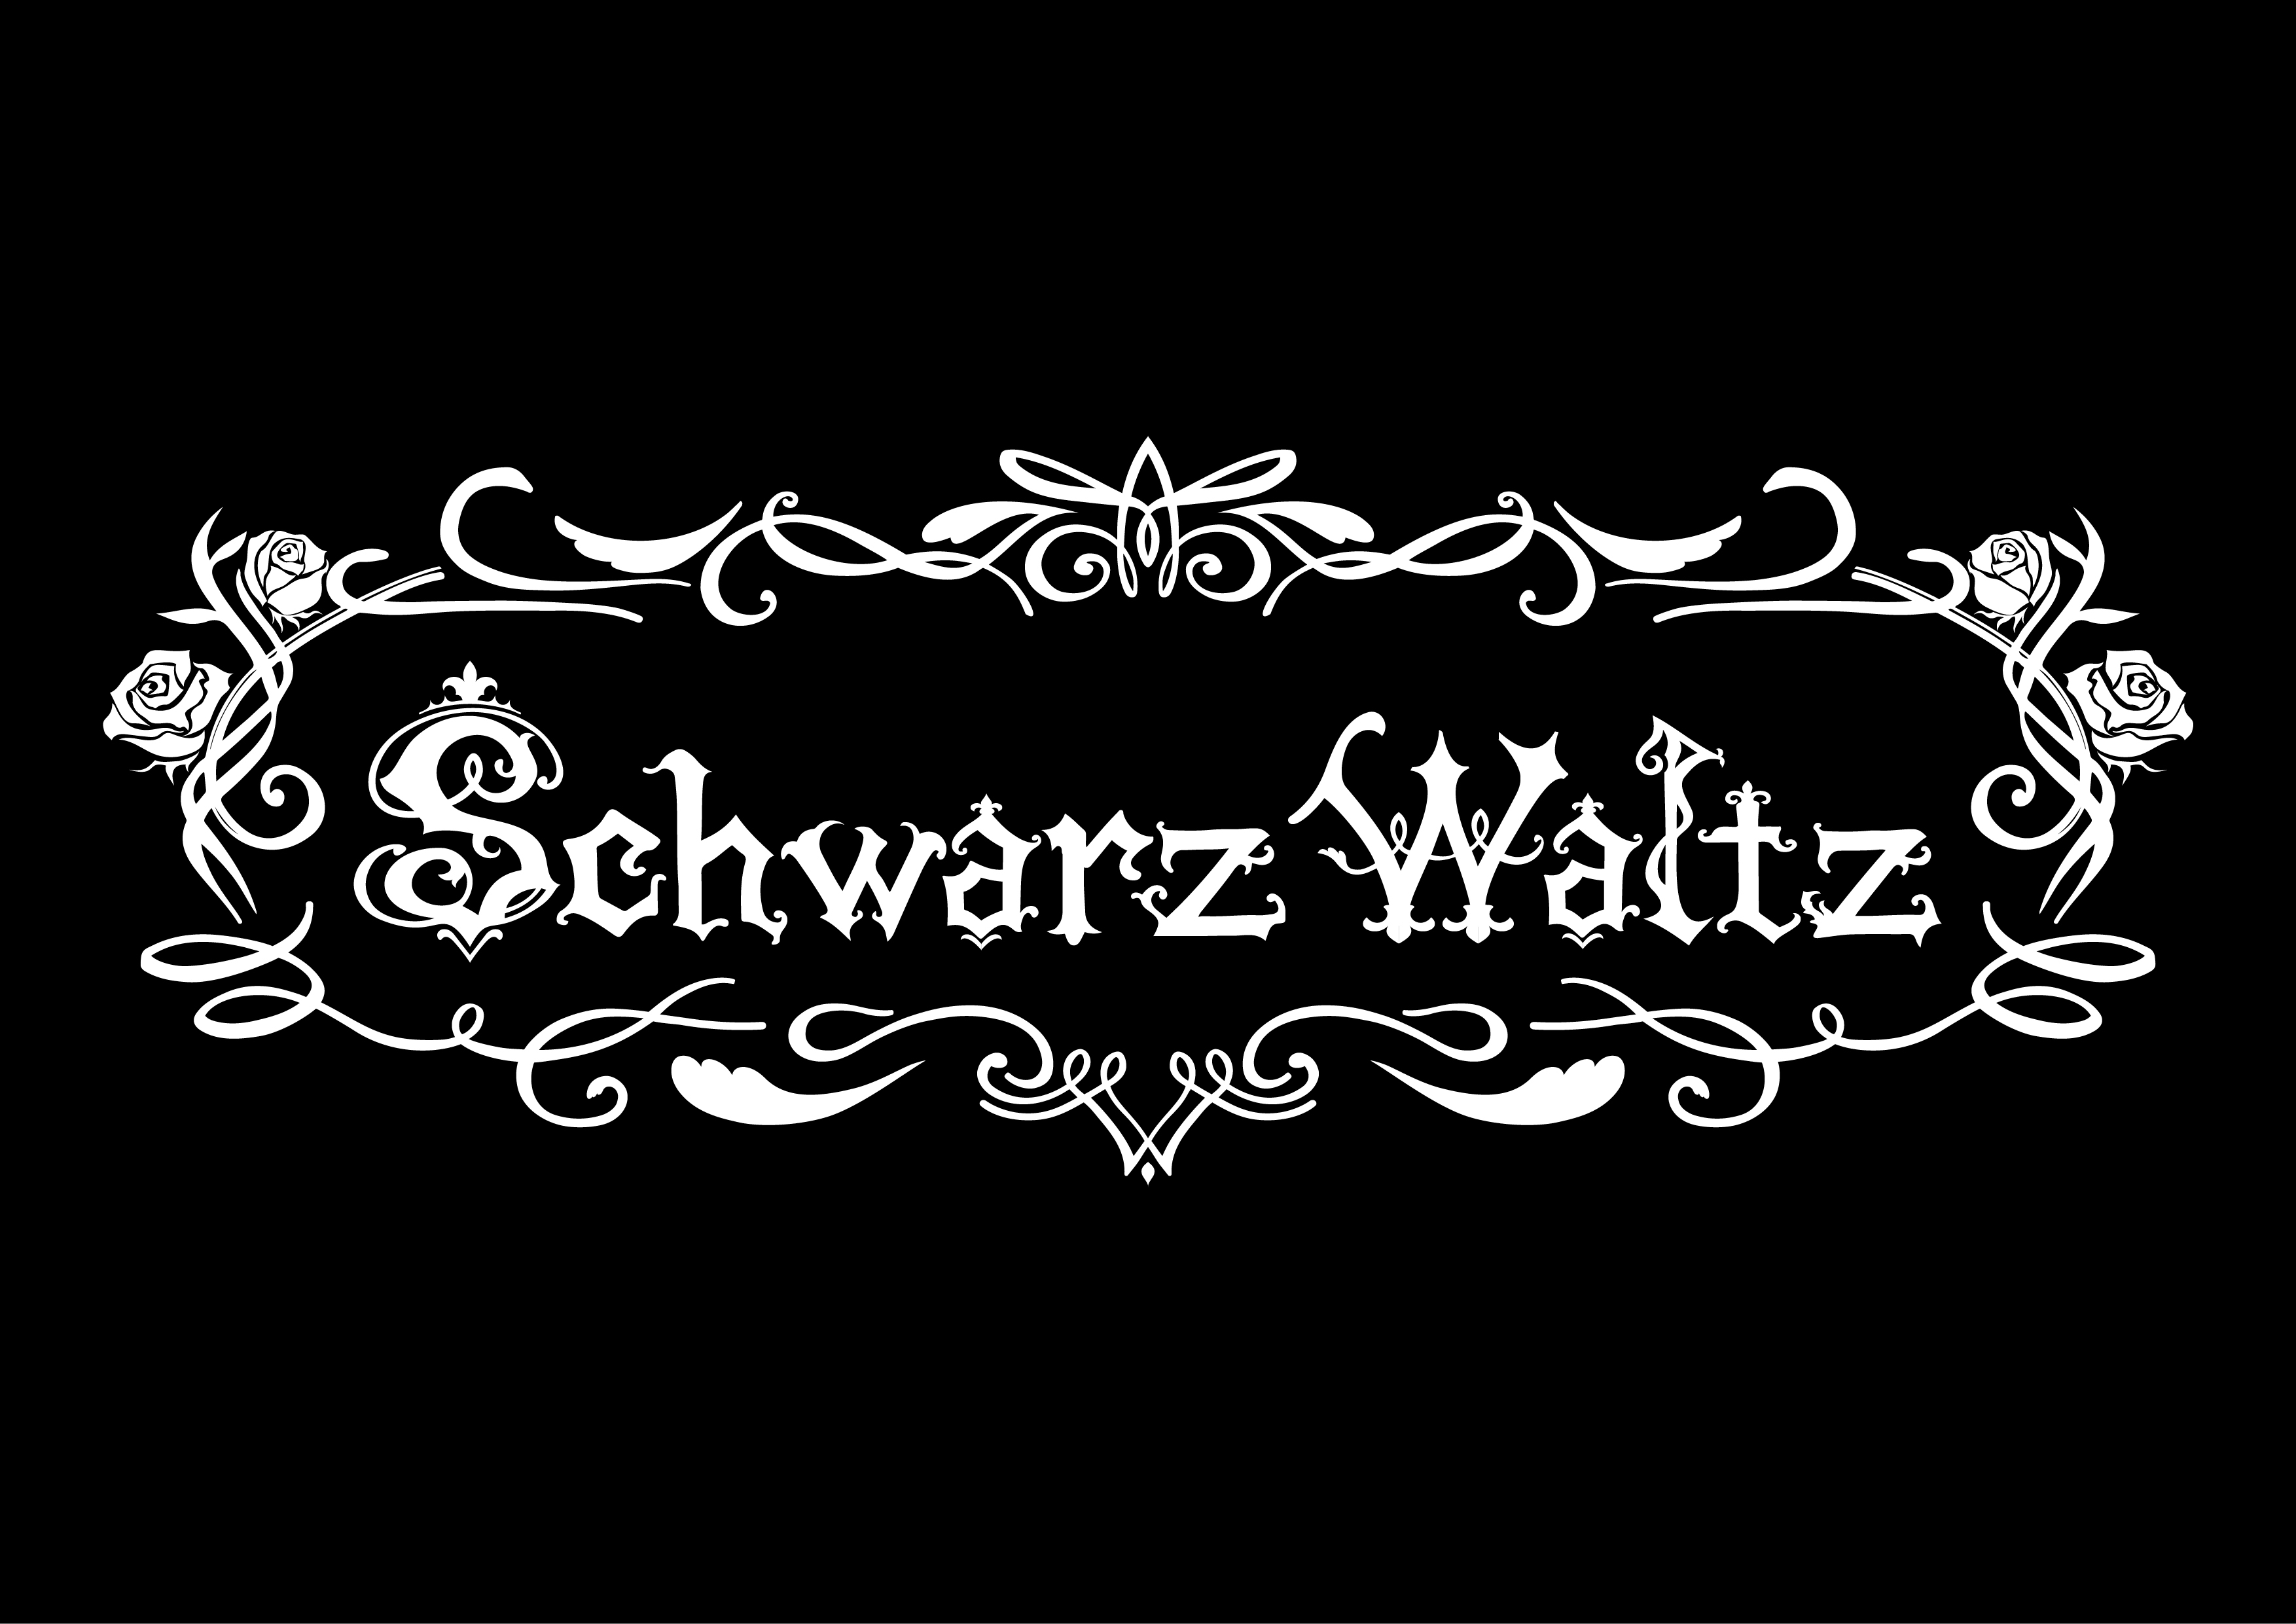 オーディション ゴシック系楽曲アイドル SchwarzWaltz 新メンバー募集 主催：SHiNO PROJECT、カテゴリ：アイドル(特化系)